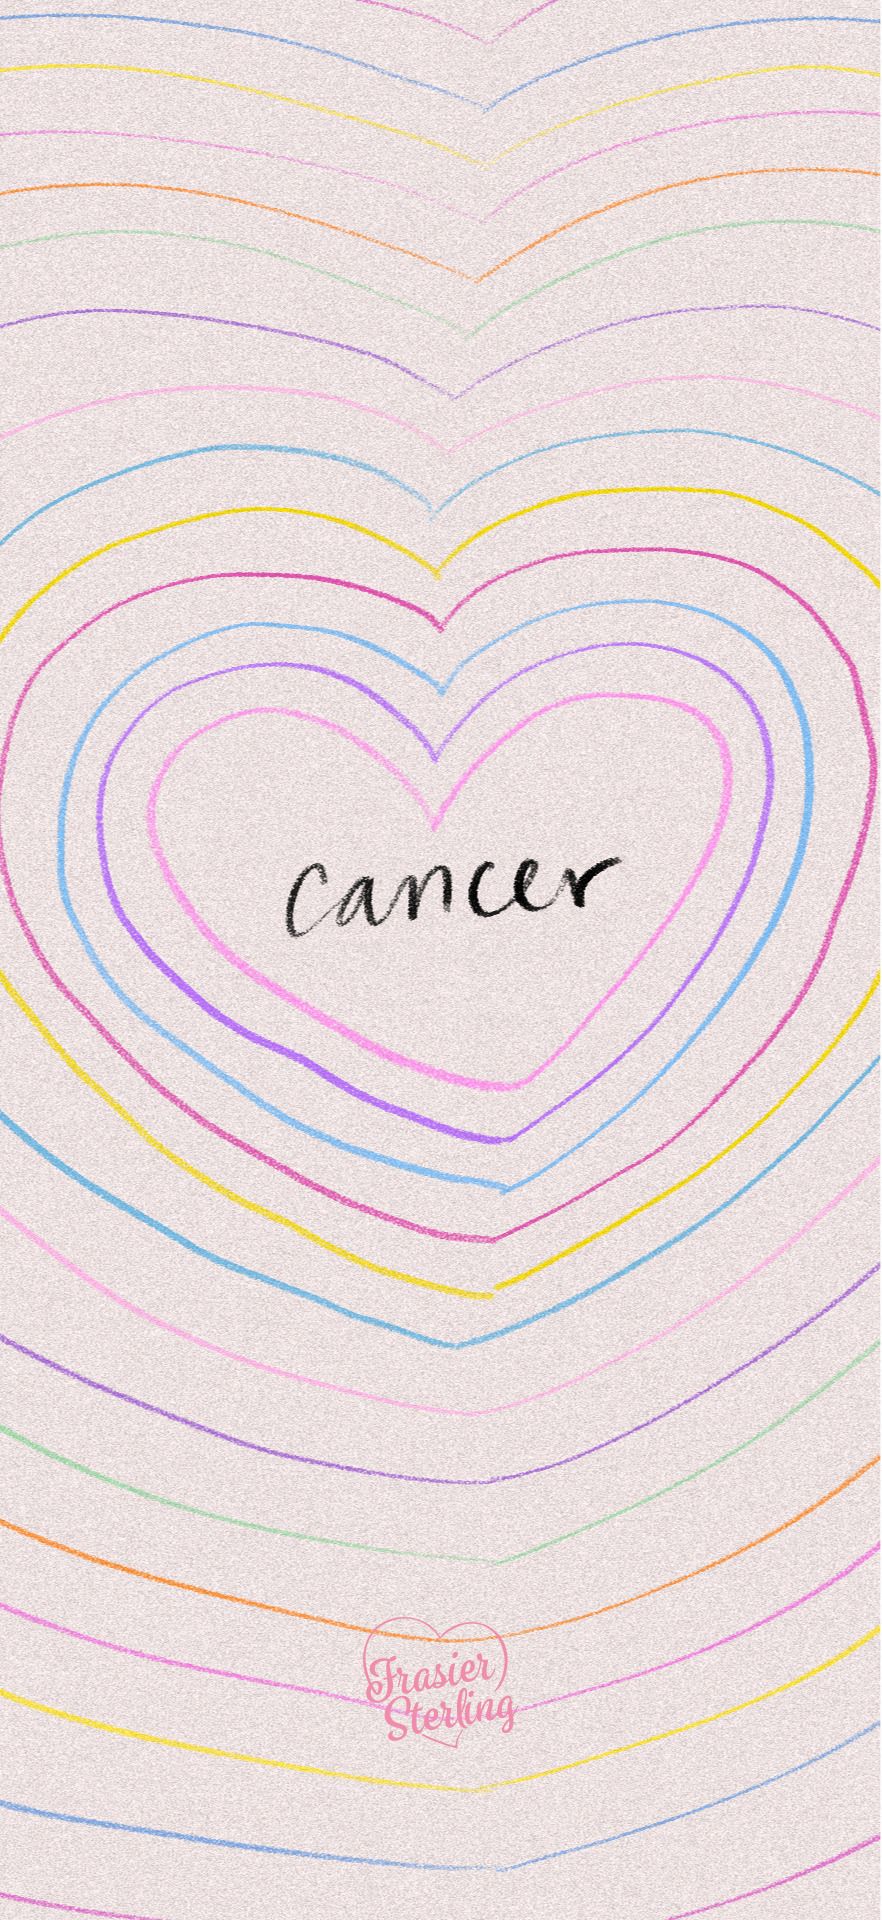 Cancer wallpaper by frasiersterling on DeviantArt - Cancer